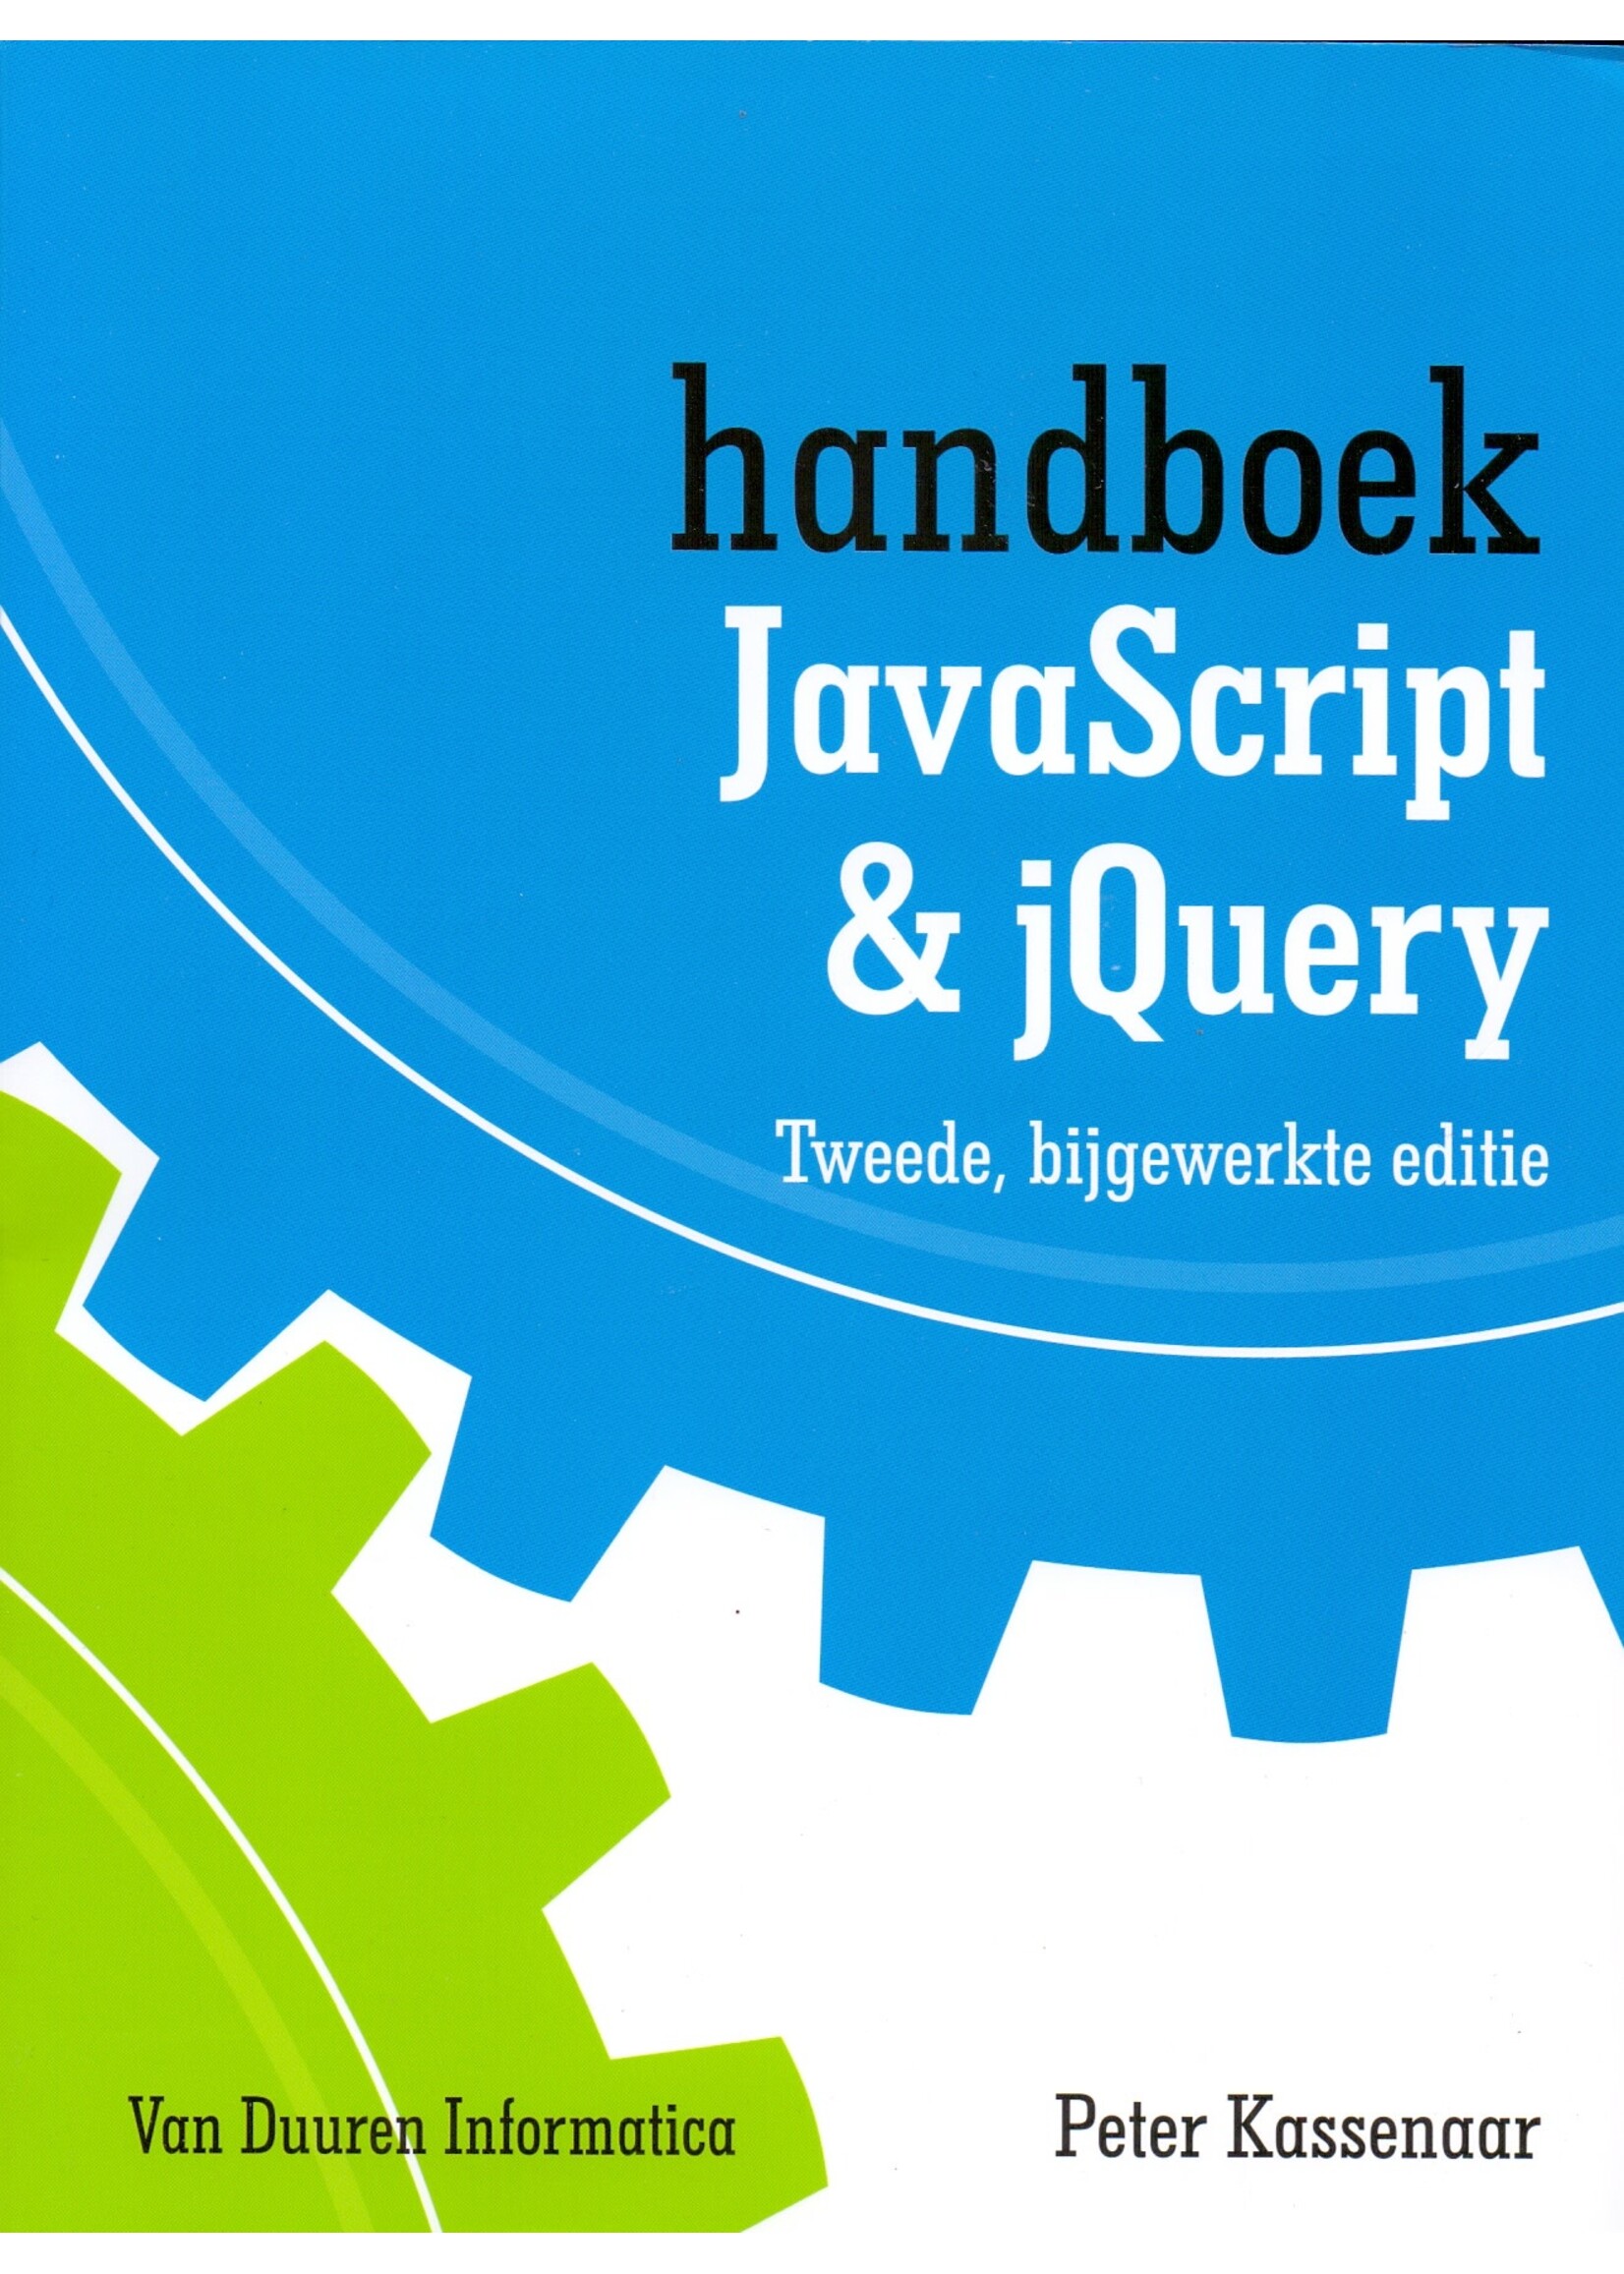 Boek Handboek Javascript & jQuery, Peter Kassenaar, Van Duuren Informatica, 9789059409156